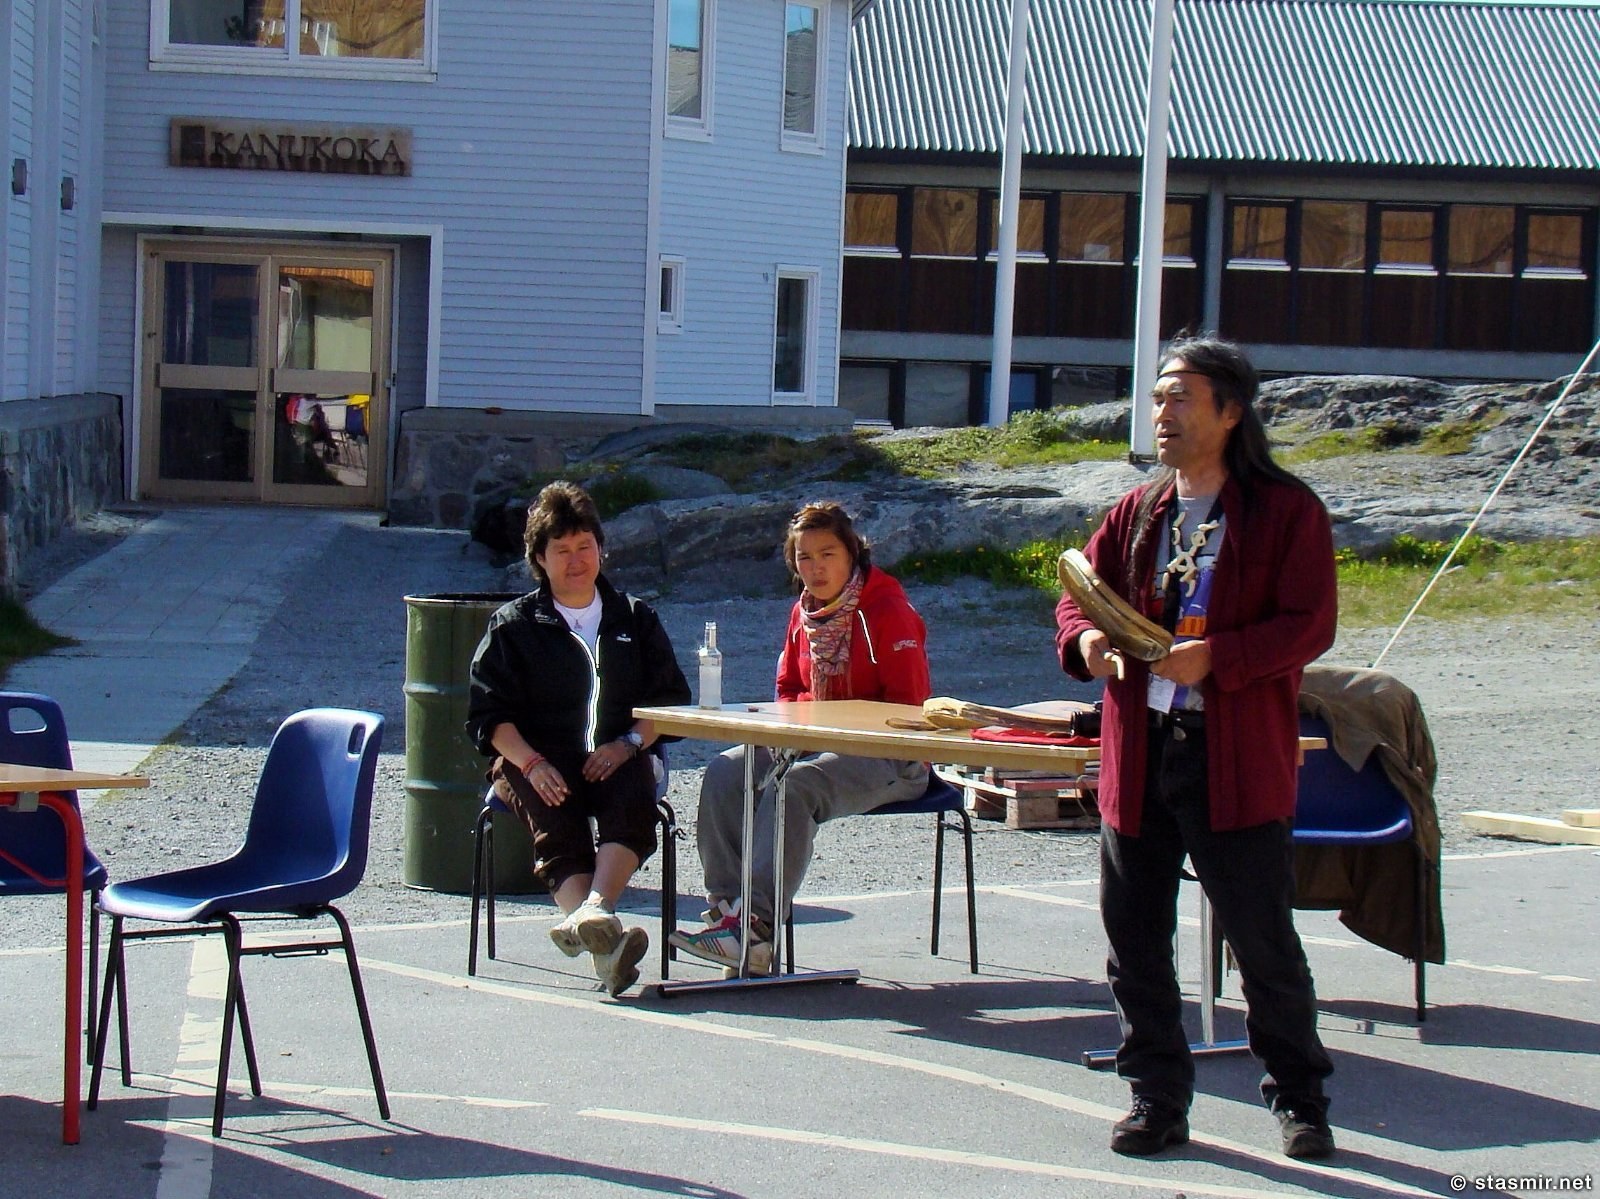 инуиты в Нууке, столице Гренландии, танец инуита, фото Стасмир, Photo Stasmir